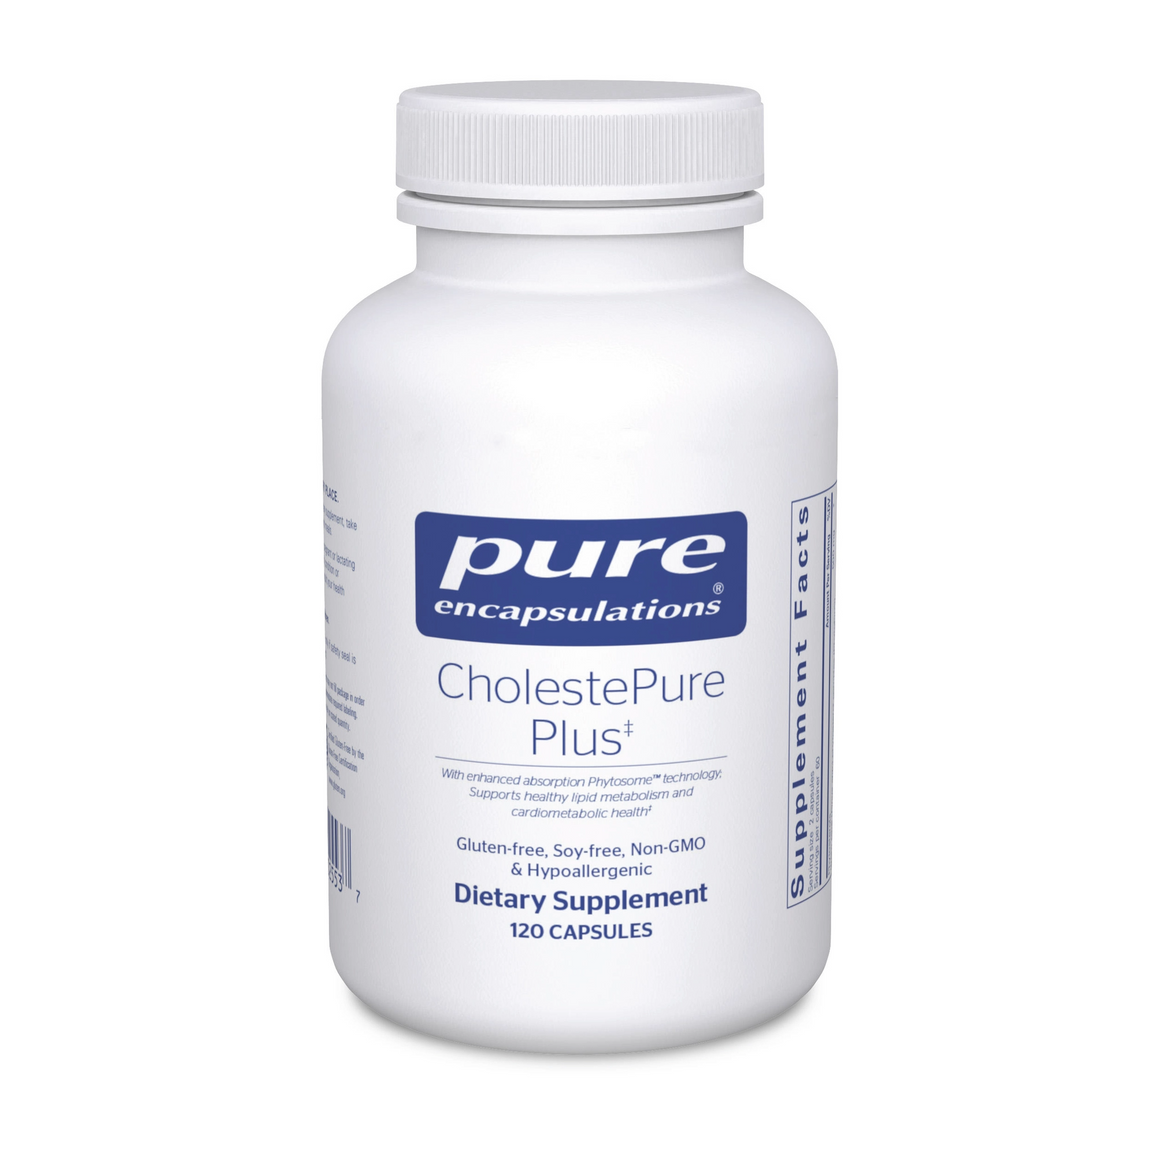 CholestePure Plus - Pure Encapsulations - 120 capsules